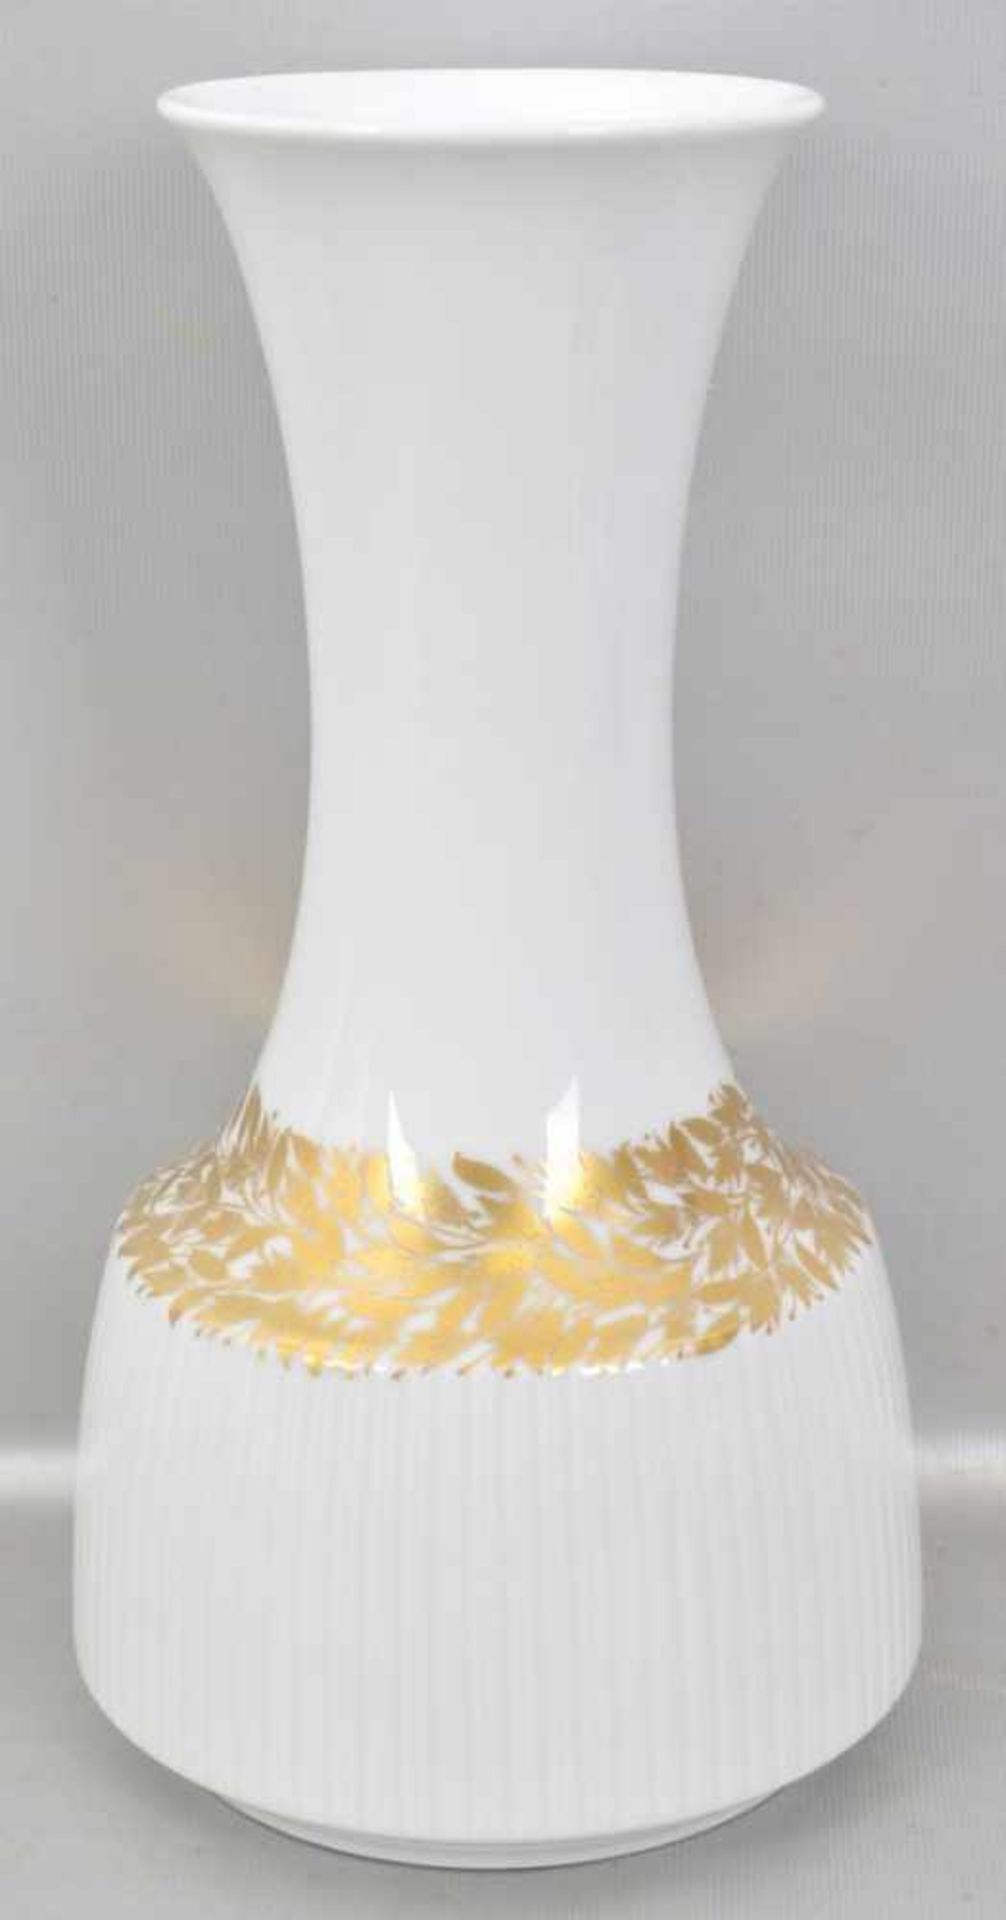 Vase weiß, mit goldenen Blüten, im Boden sign. Tapio Wirkkala, H 26 cm, FM Rosenthal, 70er Jahre